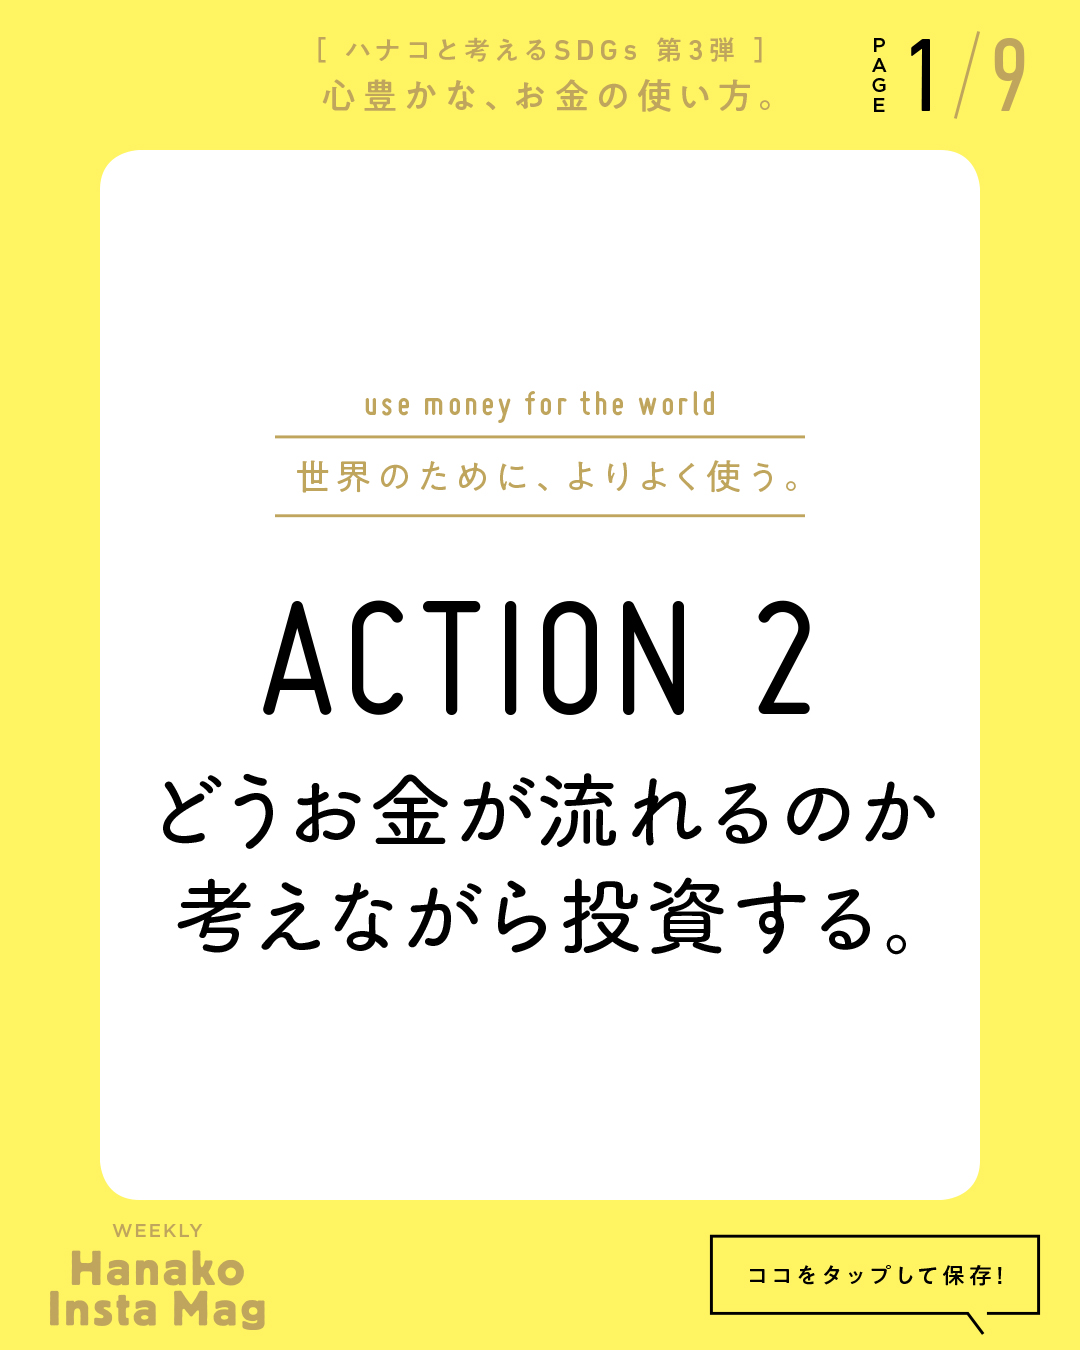 SDGs#3_sekai_action#2-1